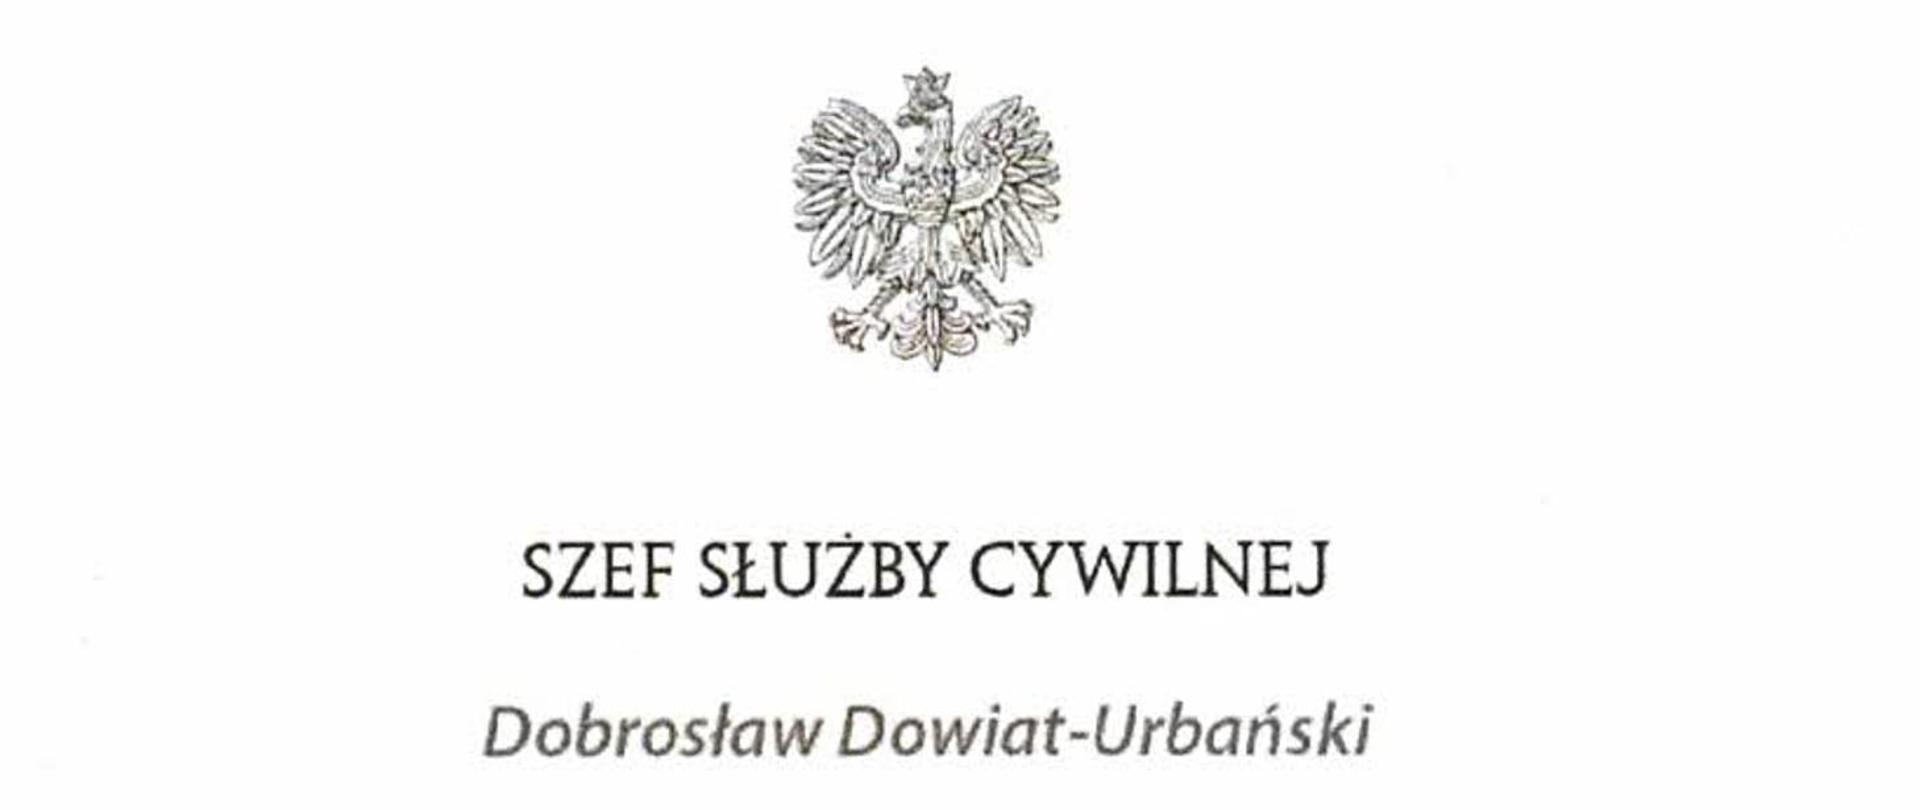 Godło Polski pod nim napis: Szef Służby Cywilnej Dobrosław Dowiat-Urbański